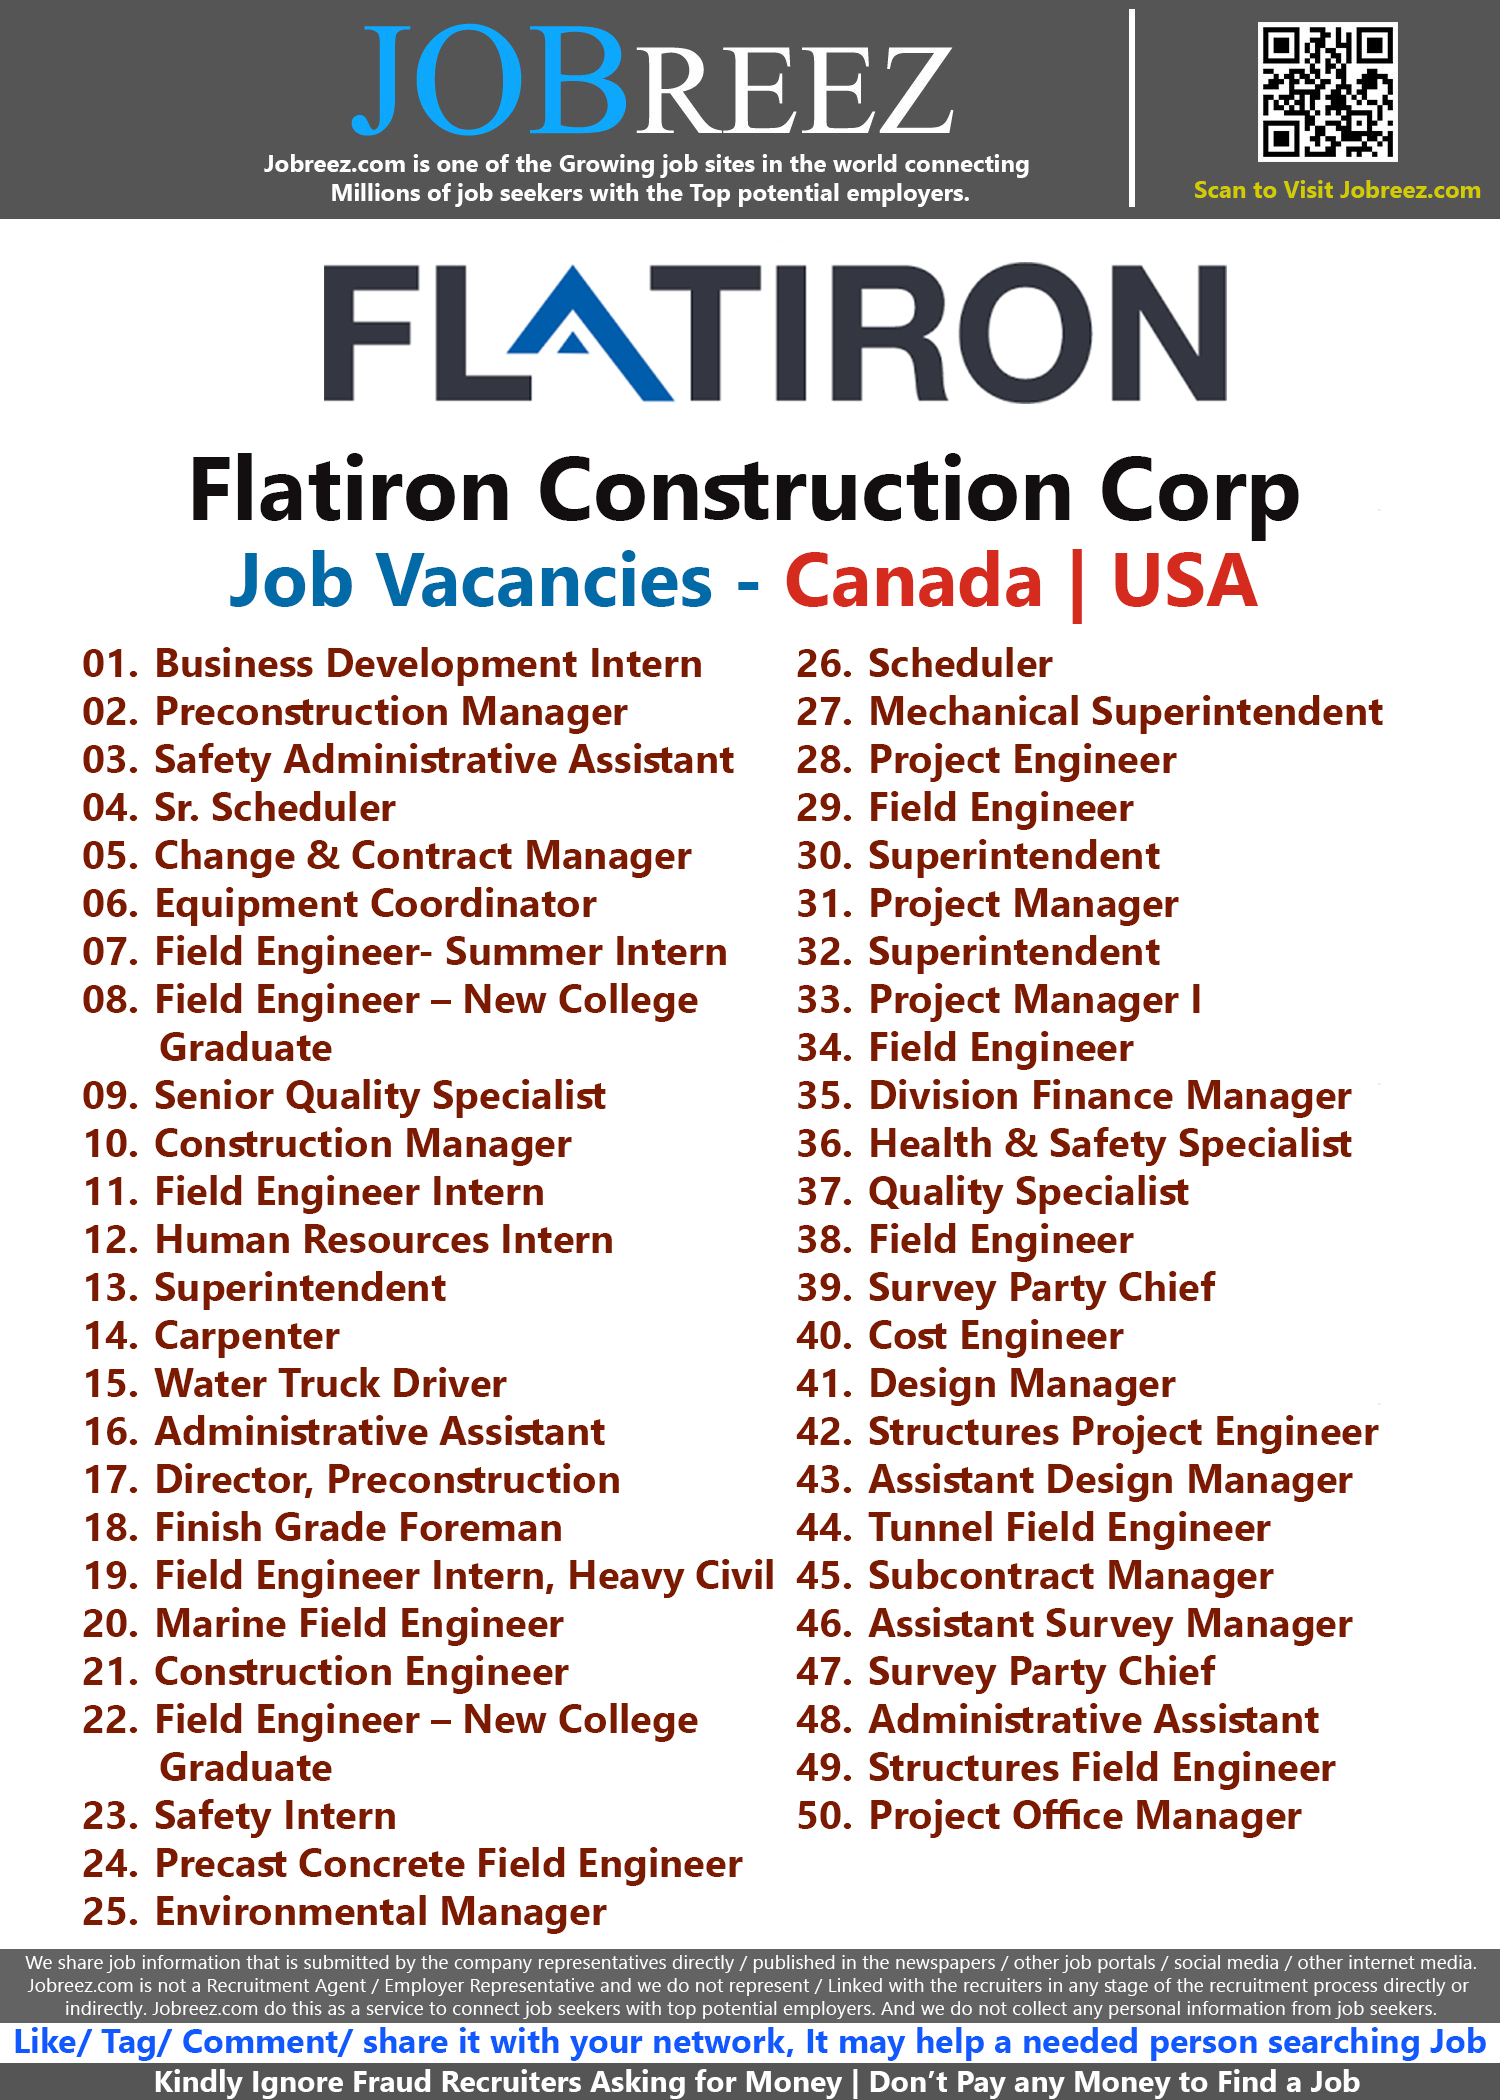 Flatiron Construction Corp Job Vacancies - Canada | USA